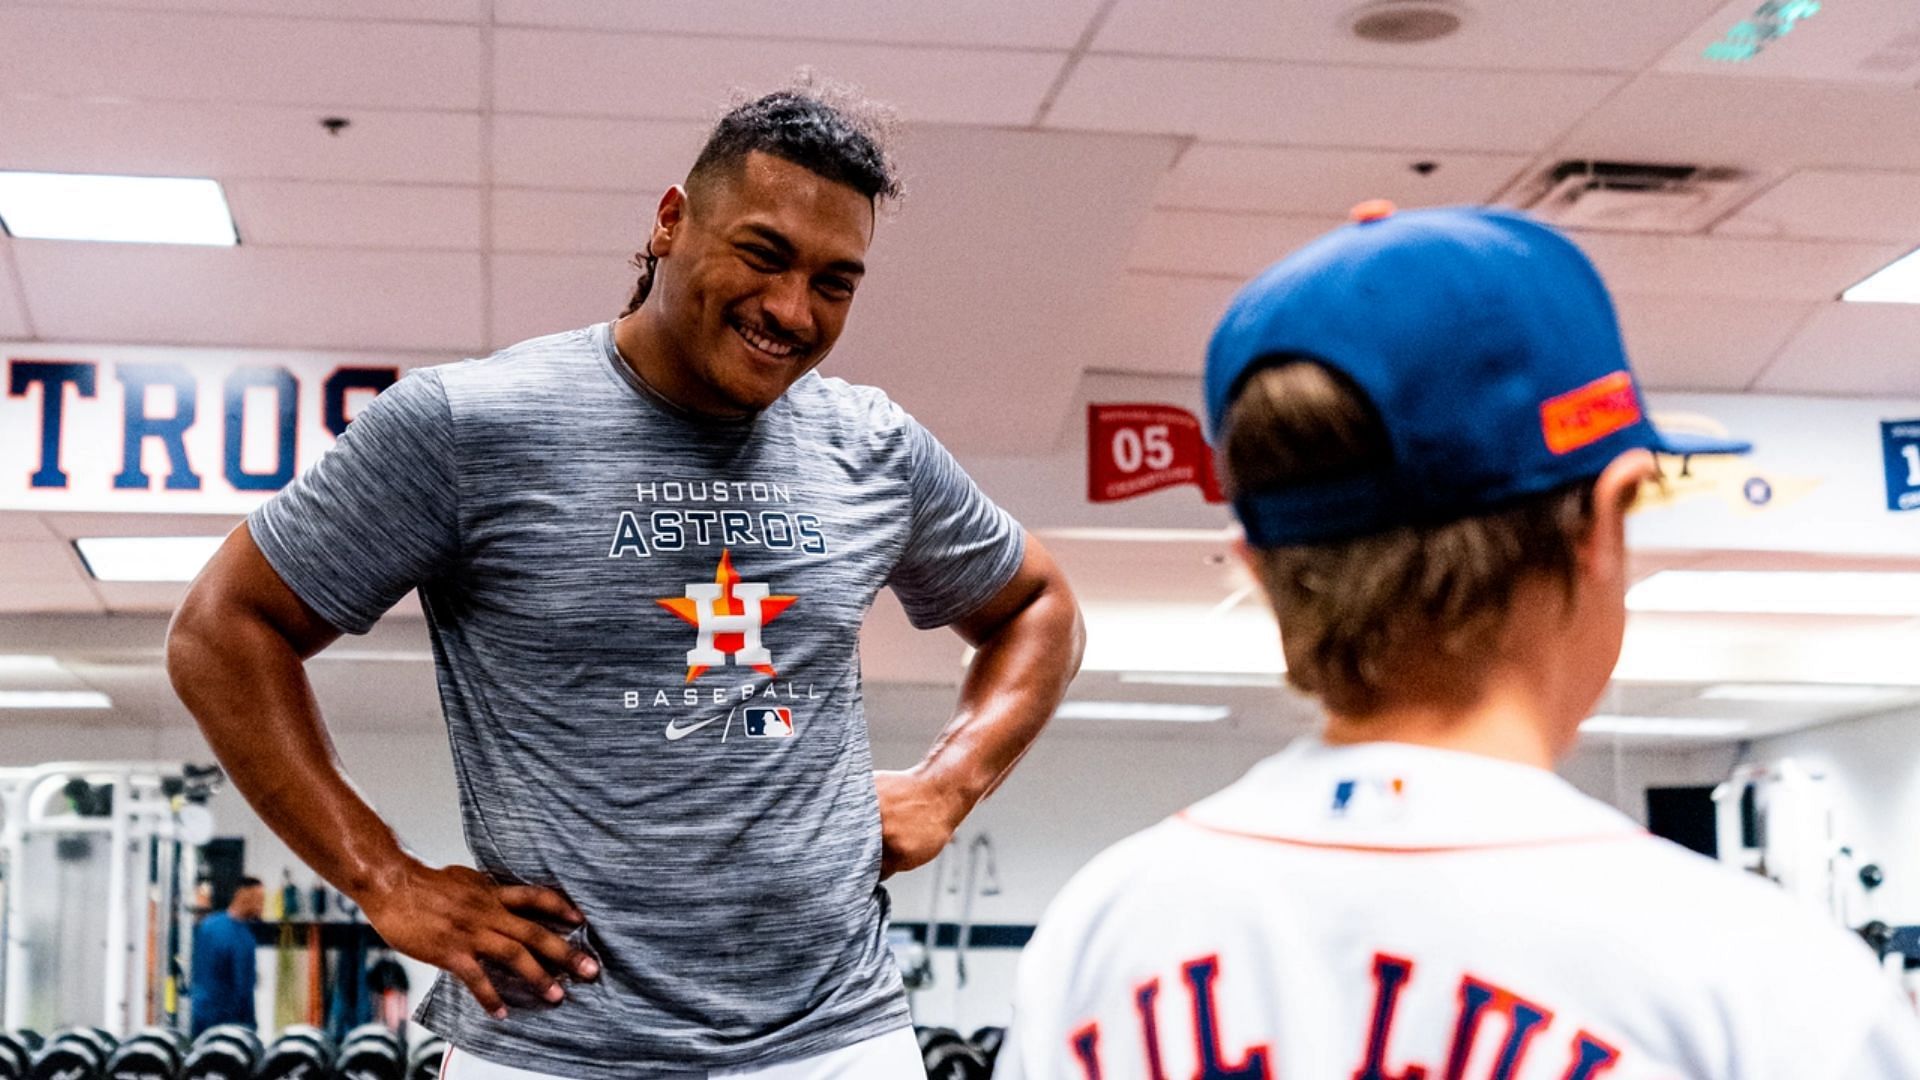 Little League pitcher copies Astros pitcher's windup